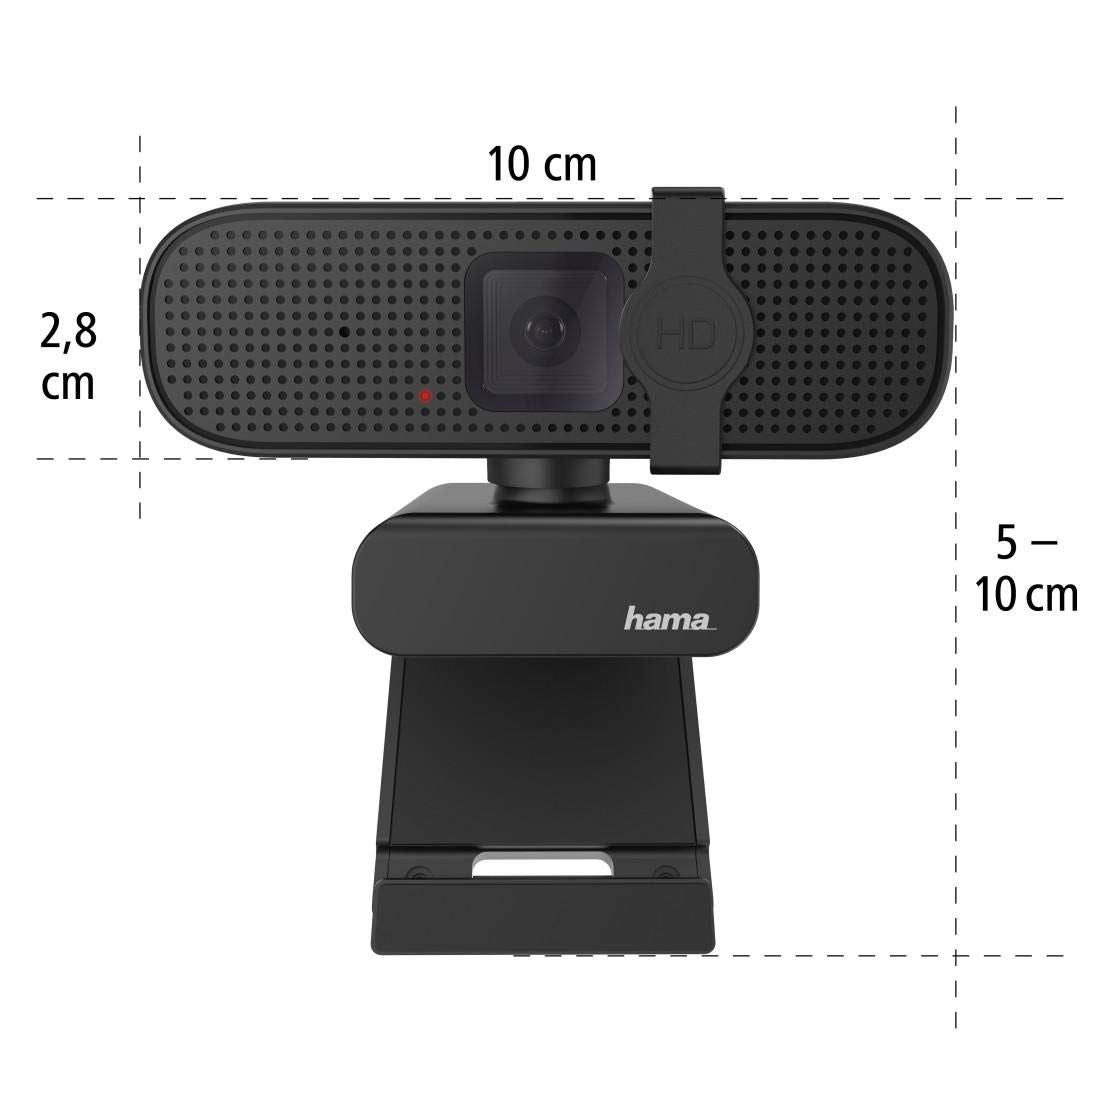 Hama C-400 PC Webcam - 1080p